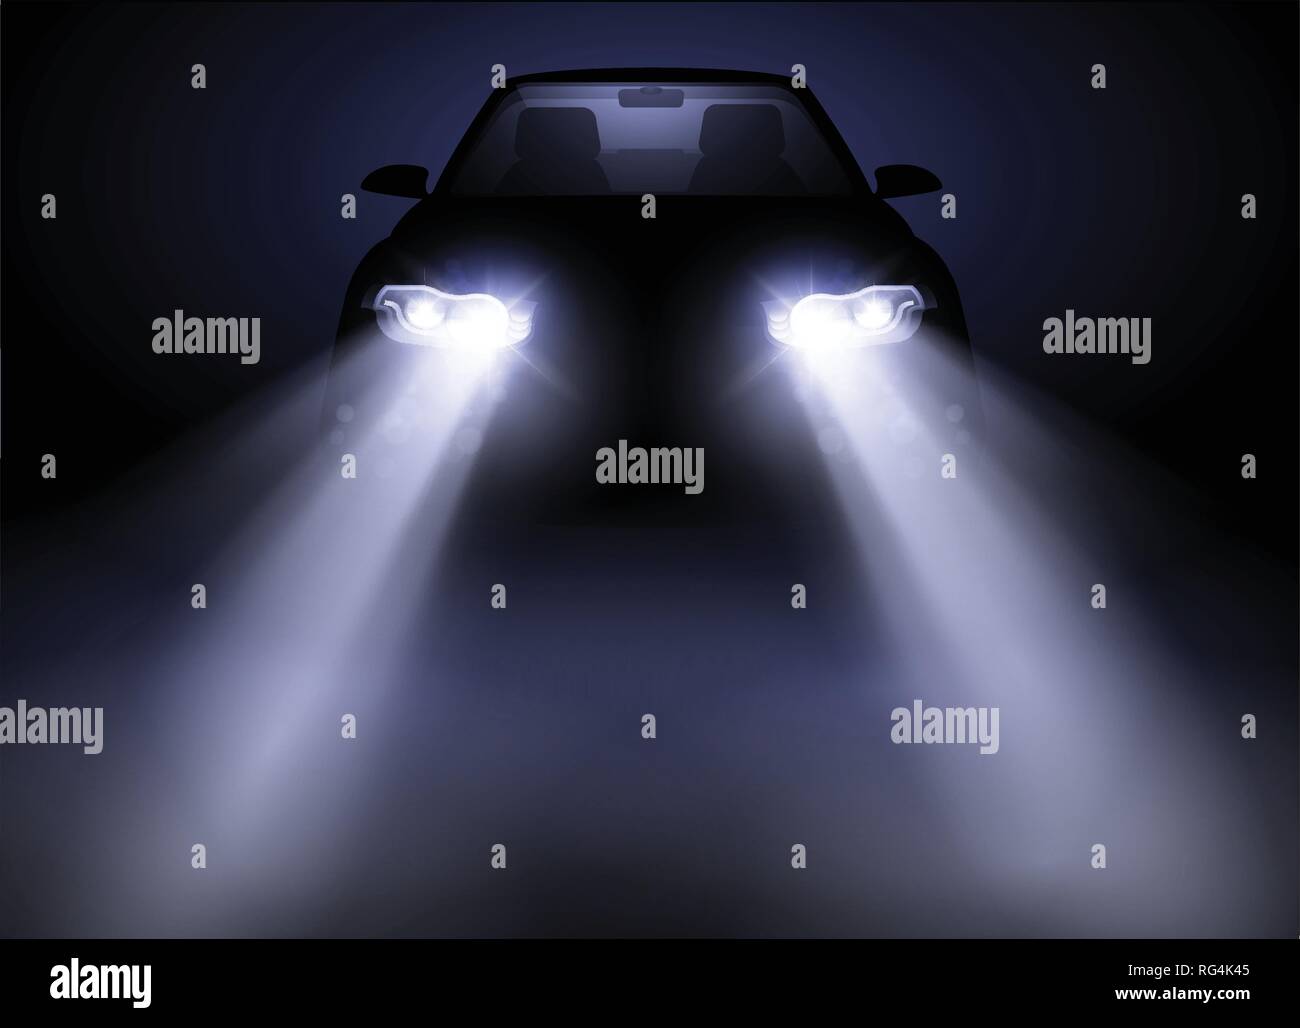 Lumineuse et moderne, les phares de voitures générique auto brillant à travers le brouillard pendant la nuit. Vector illustration. Illustration de Vecteur